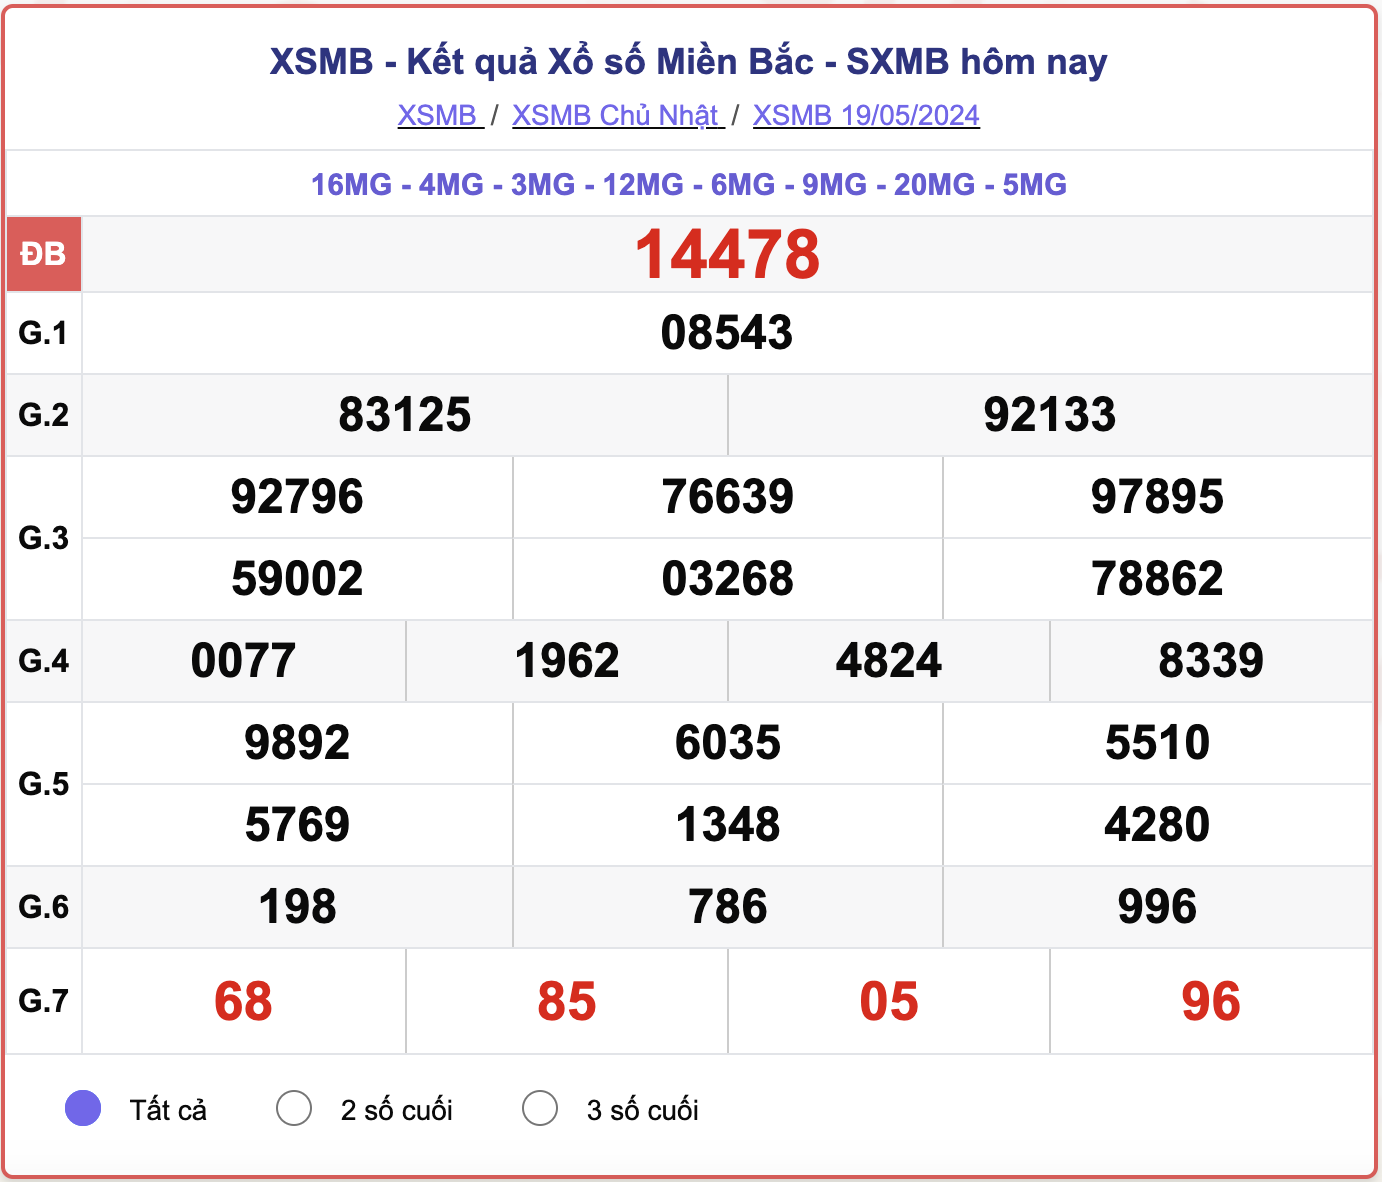 XSMB 25/5 - Kết quả xổ số miền Bắc hôm nay 25/5/2024 - KQXSMB ngày 25/5- Ảnh 7.